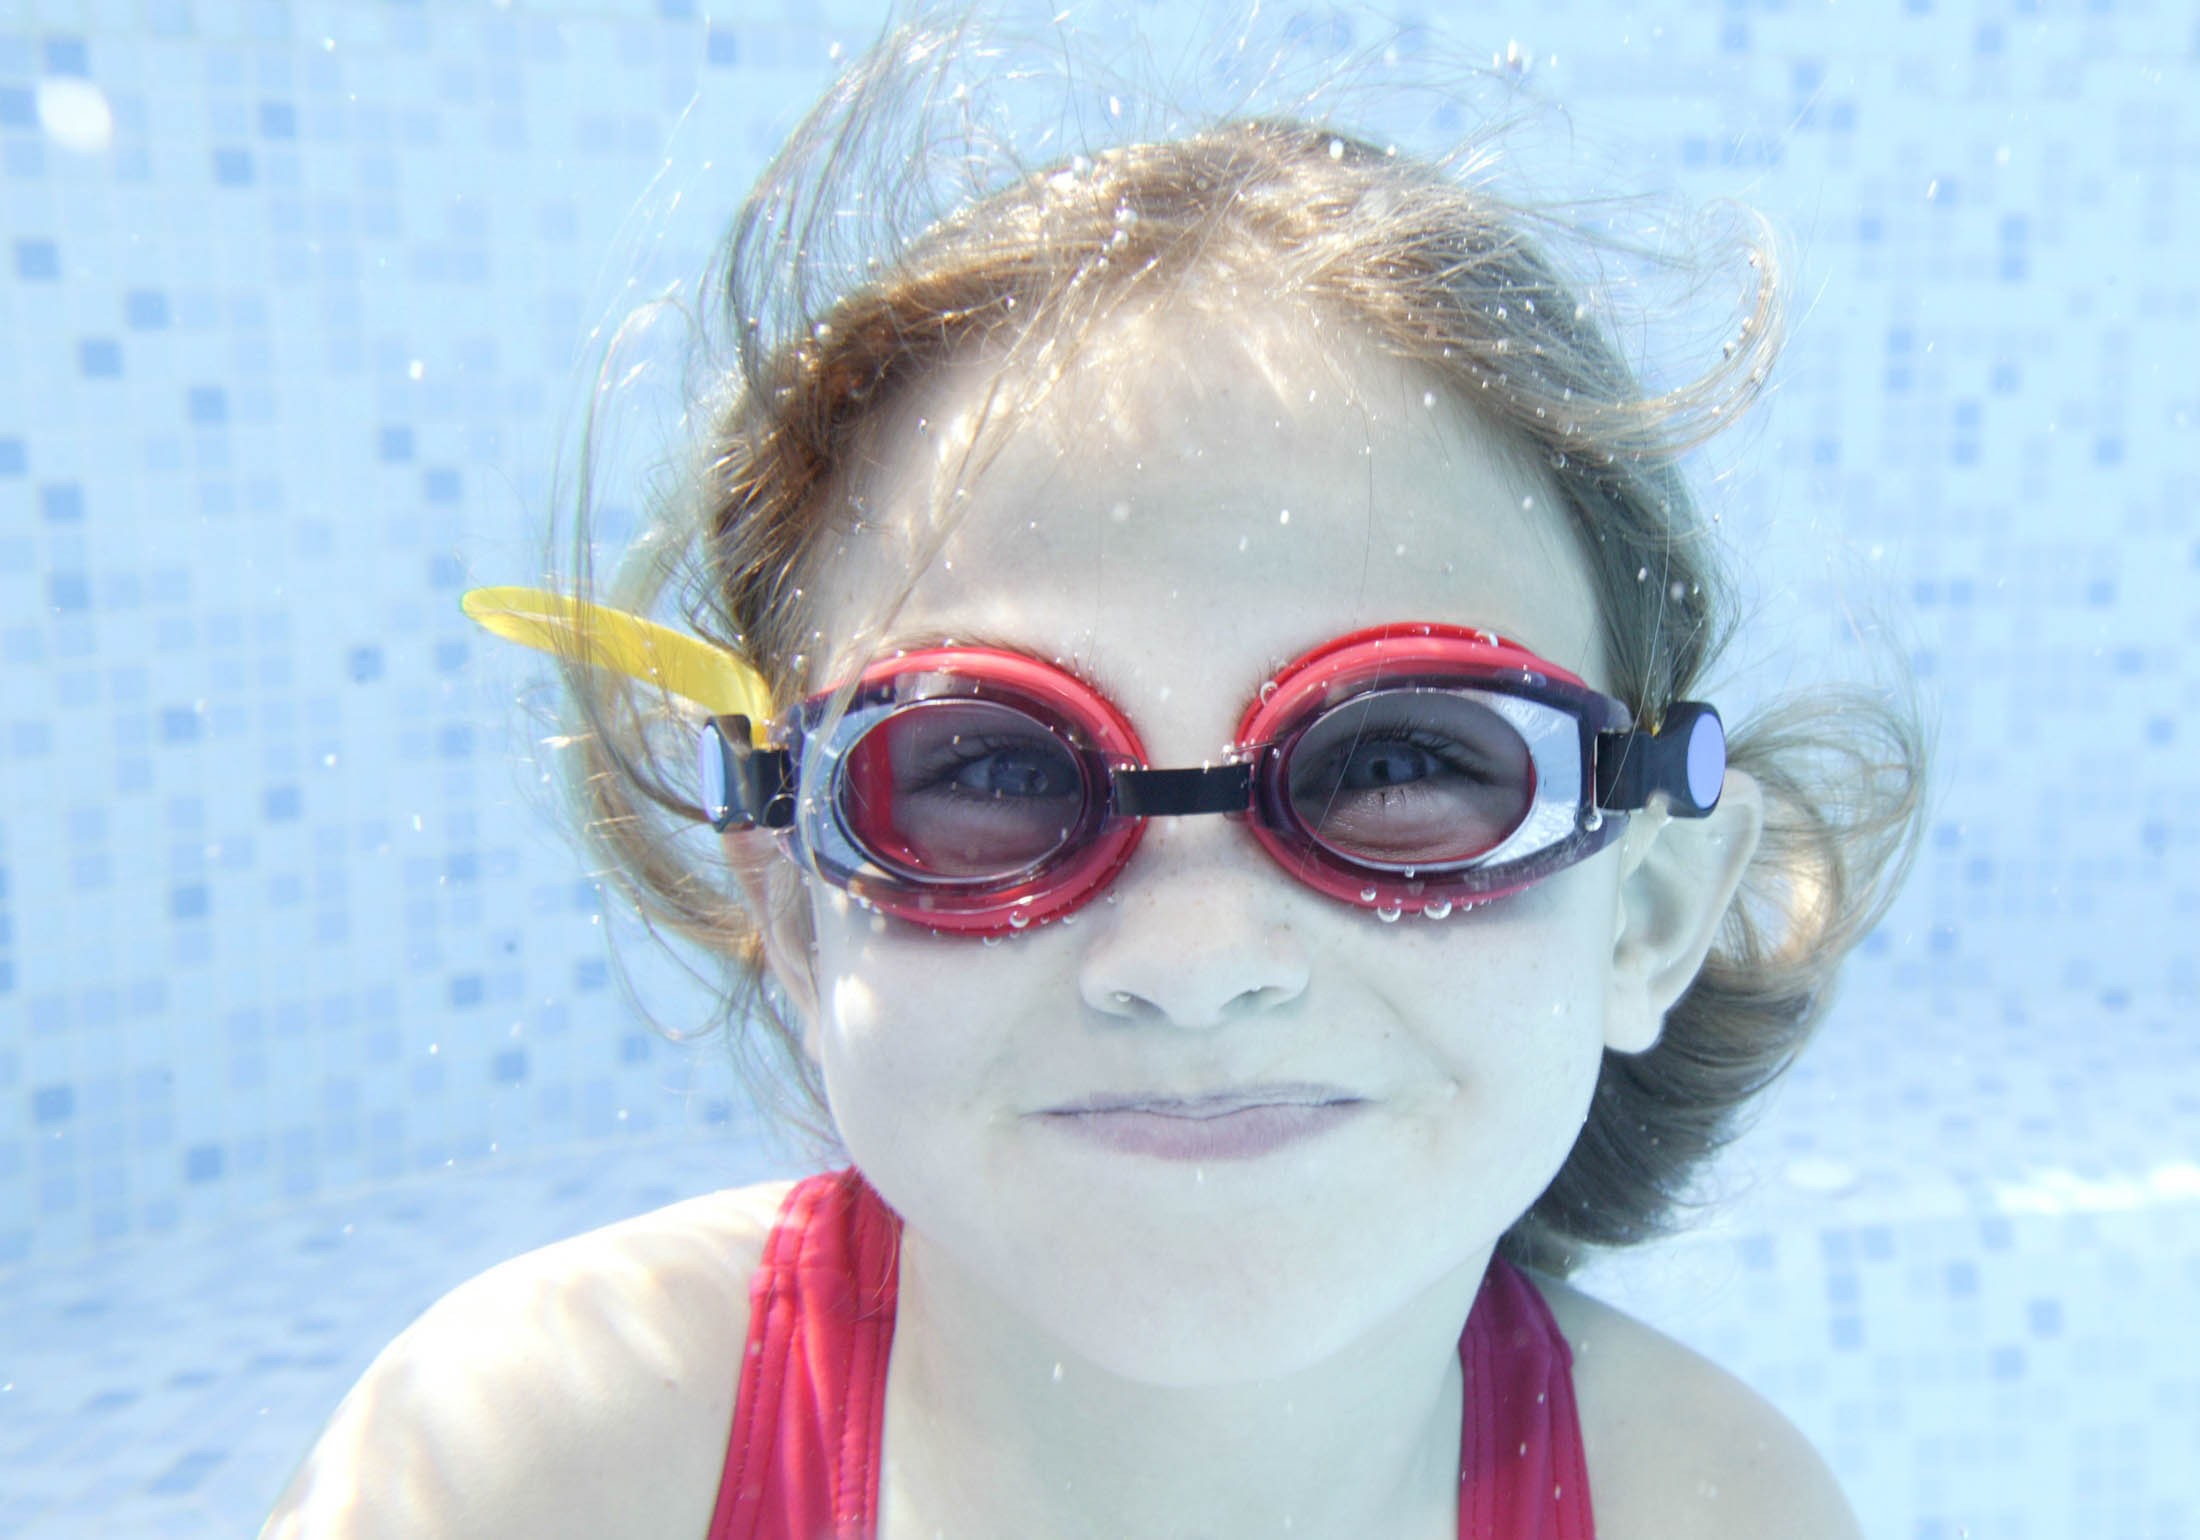 Ein junges Mädchen mit einer roten Schwimmbrille und einem Lächeln schwimmt unter Wasser in einem klaren blauen Becken mit sichtbaren Mosaikfliesen im Hintergrund. © Fotografie Tomas Rodriguez